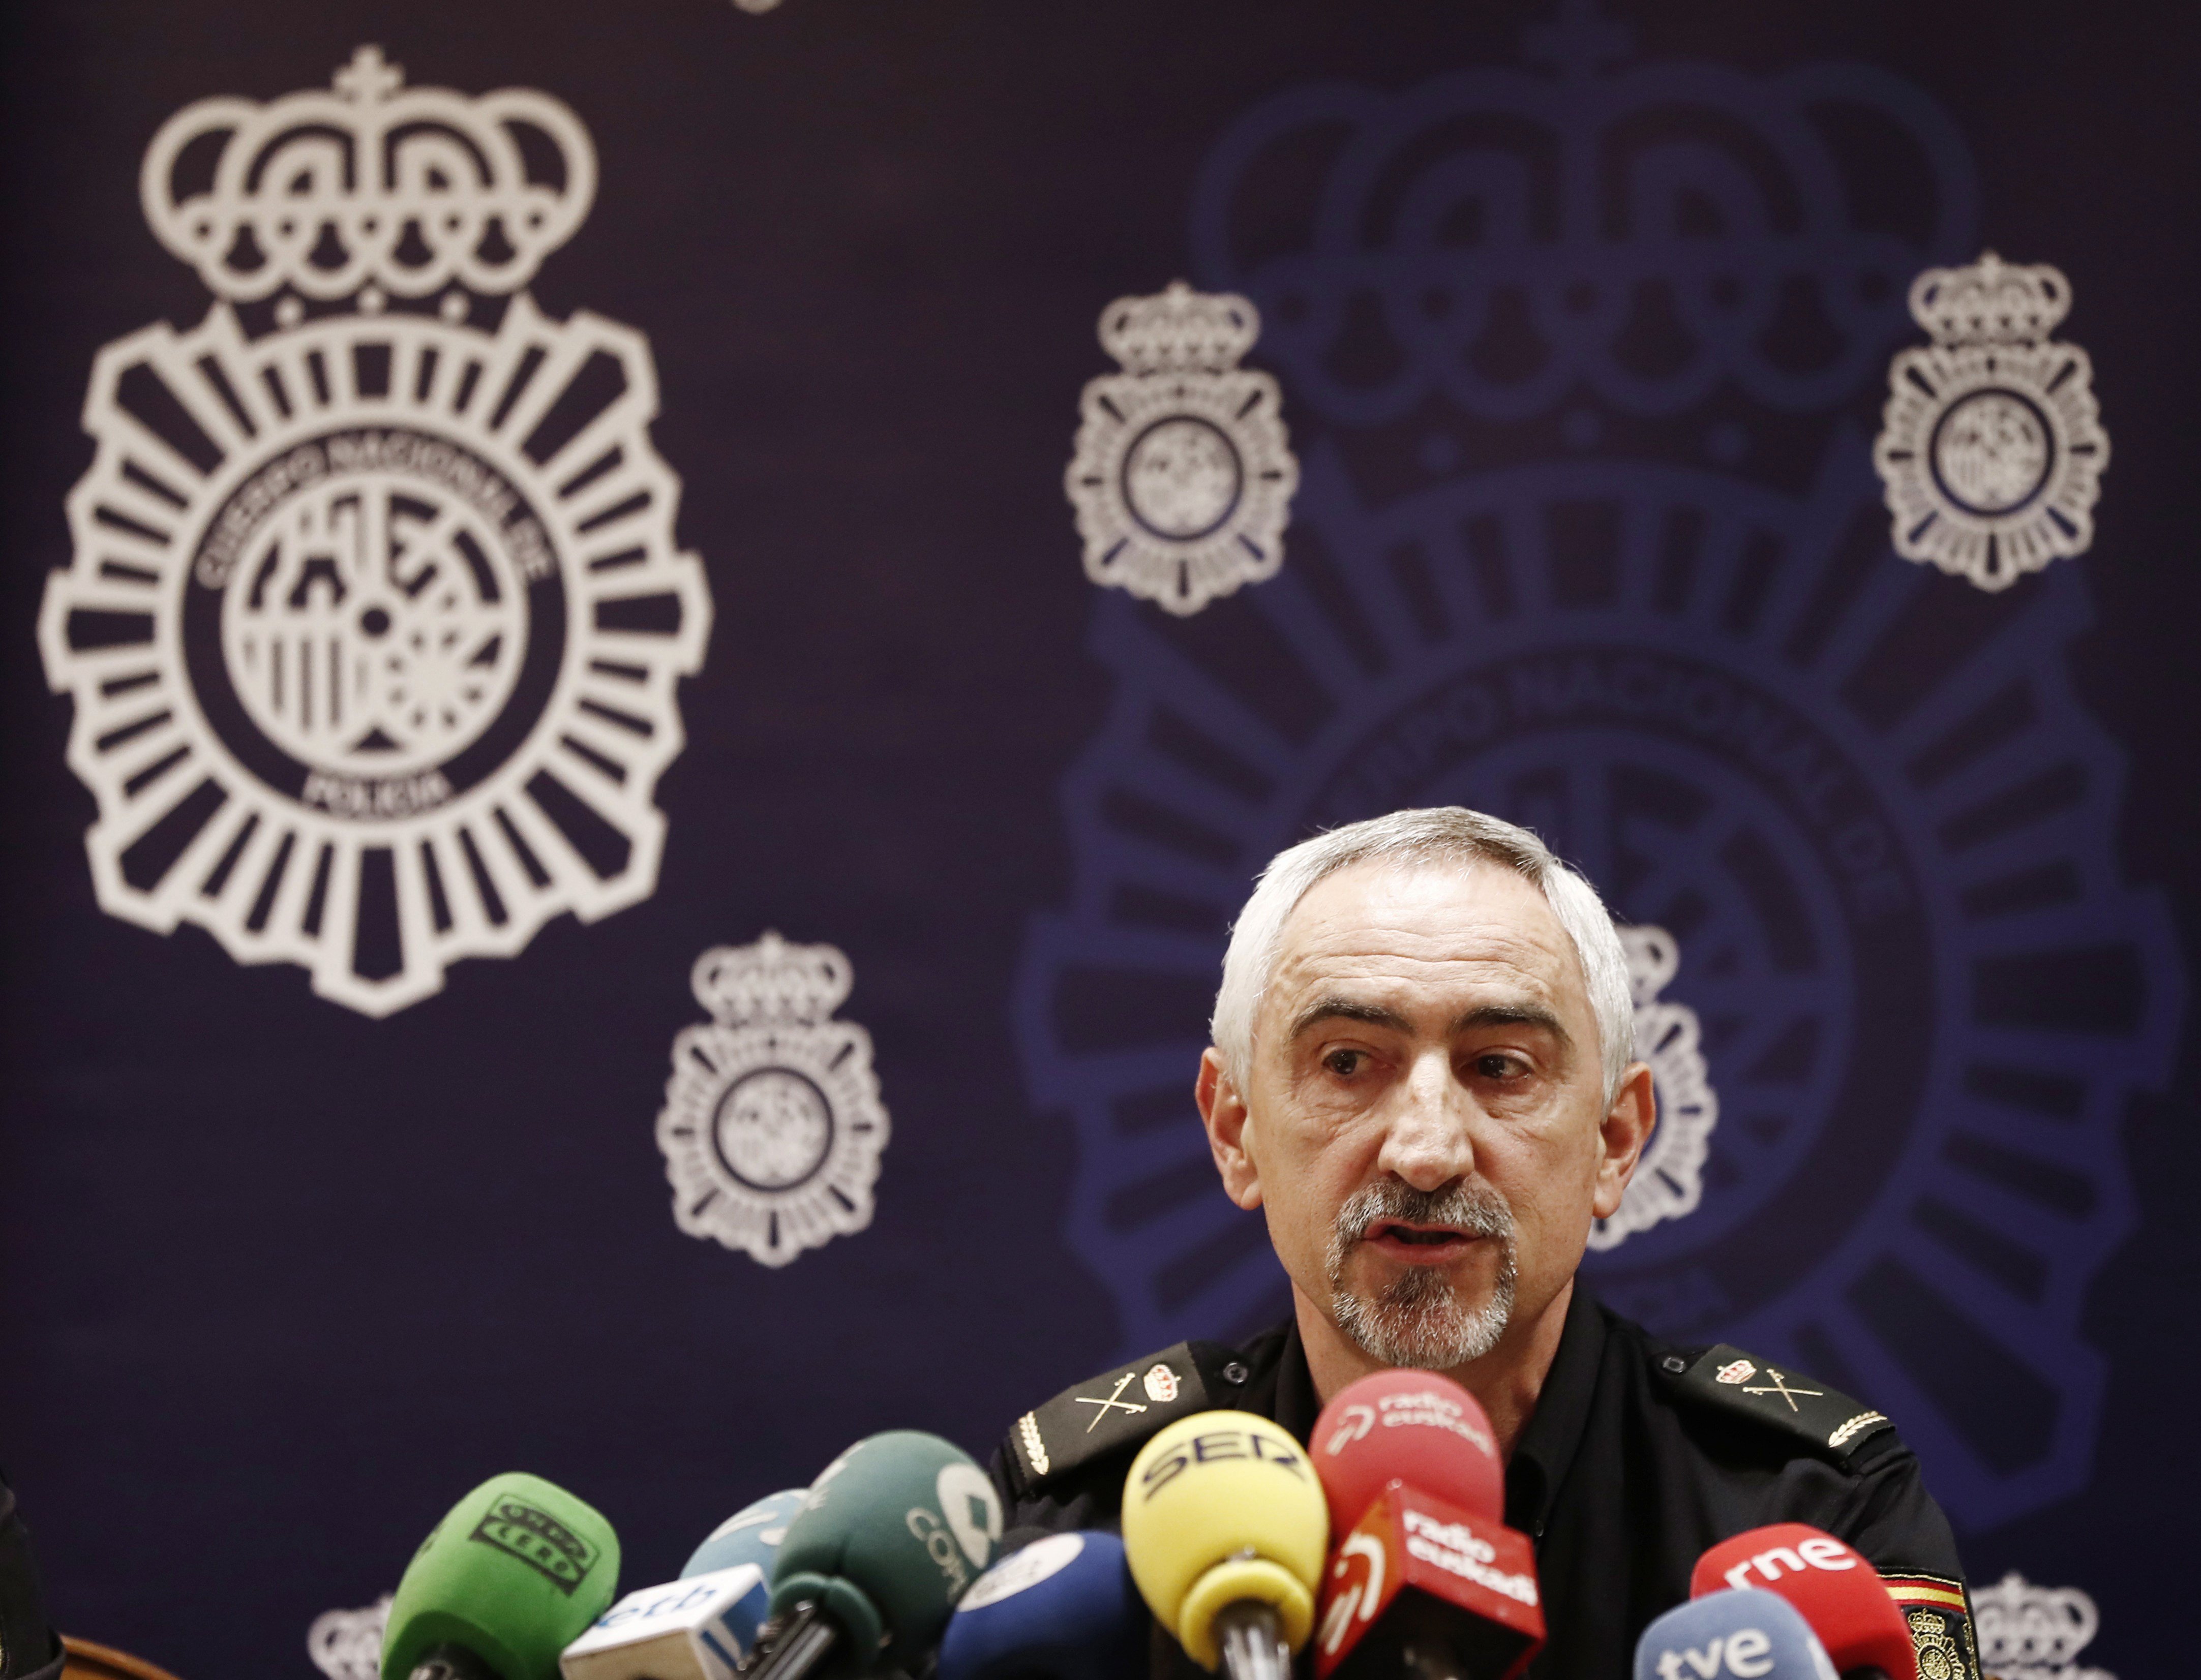 Dimiteix el cap de la policia espanyola a Navarra per insults a polítics a Twitter